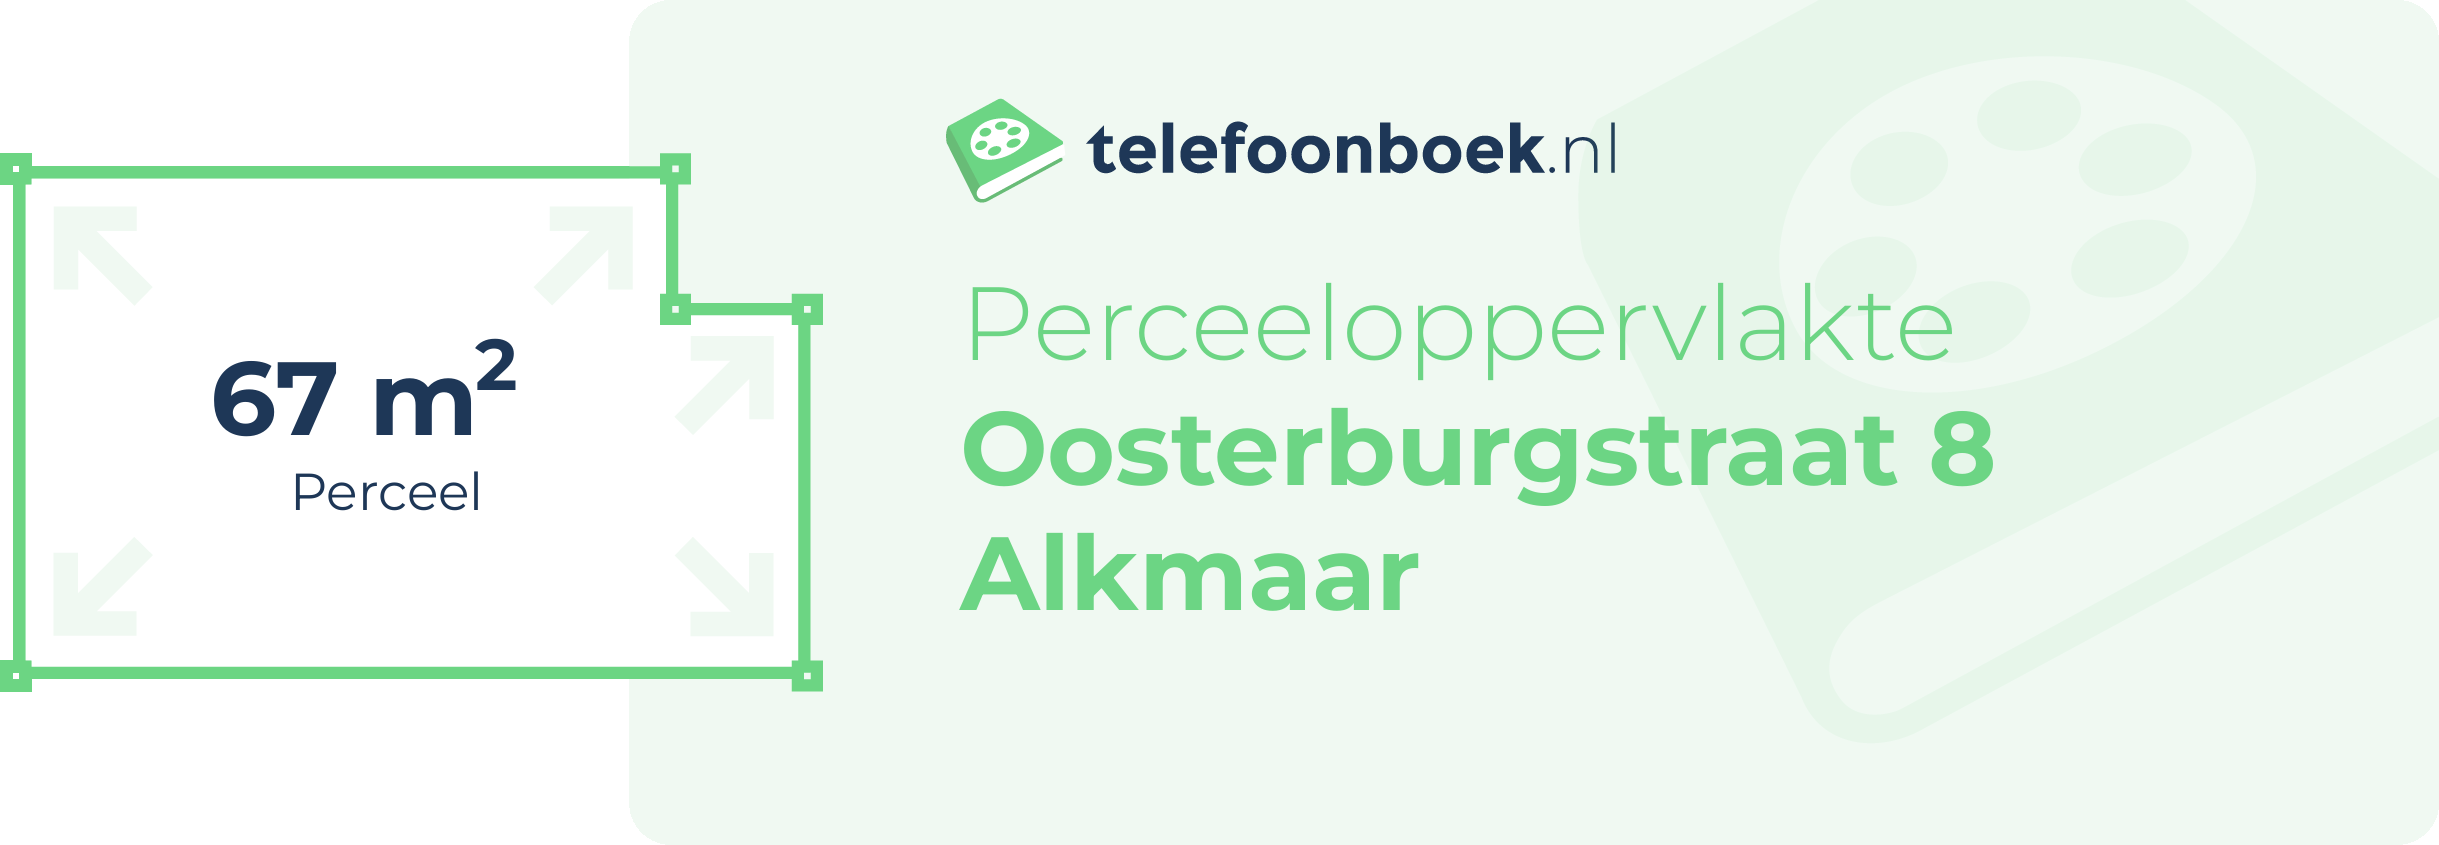 Perceeloppervlakte Oosterburgstraat 8 Alkmaar